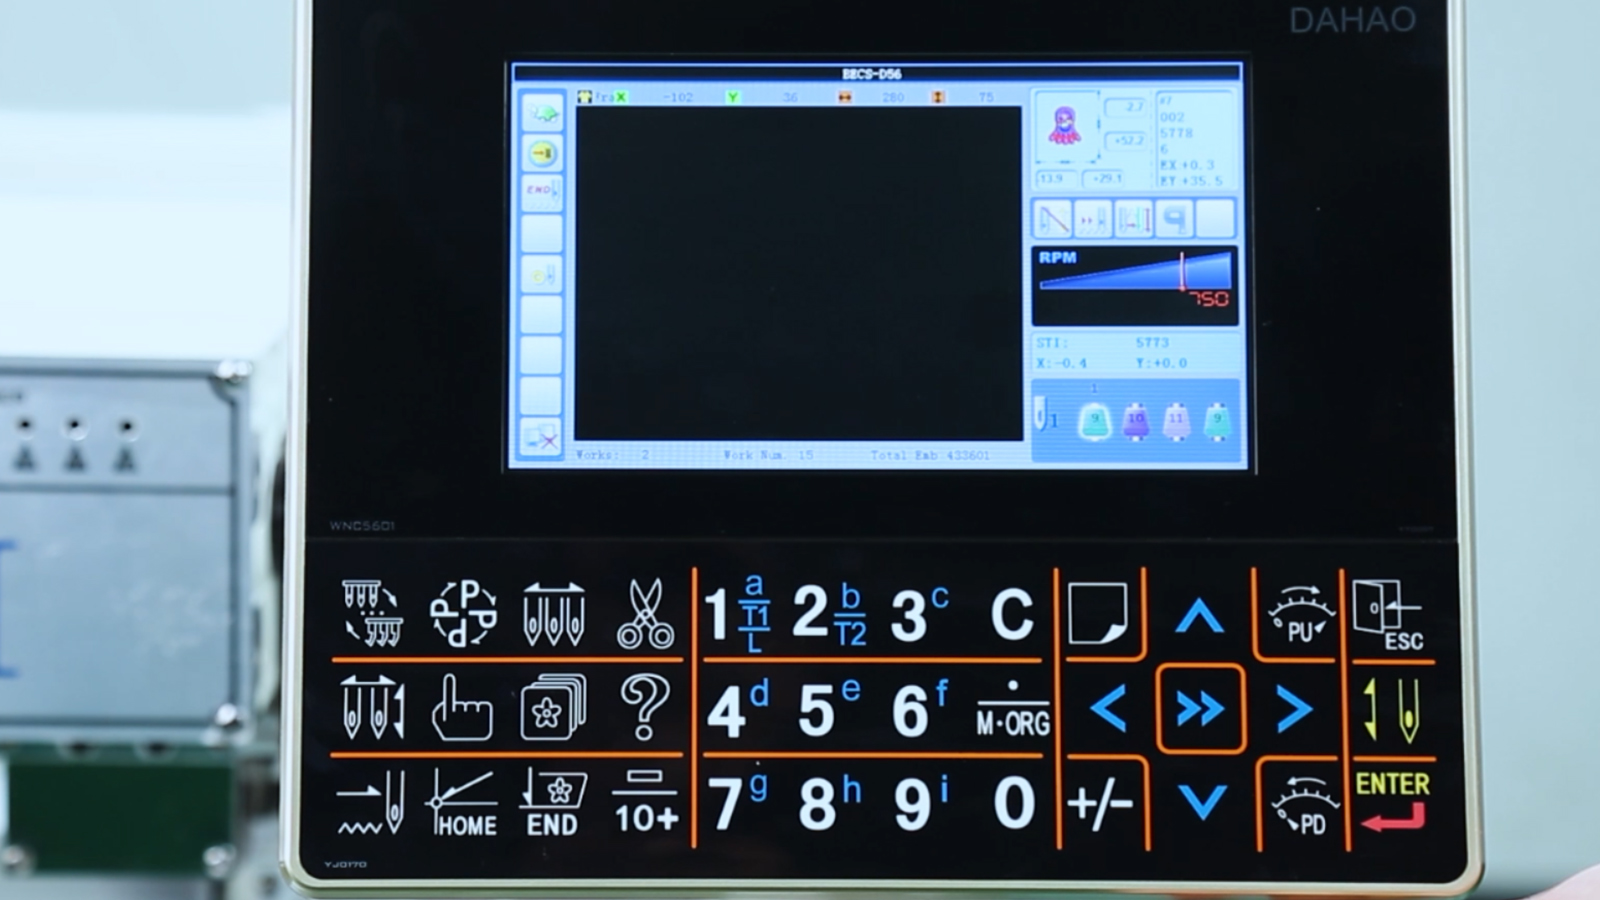 BAI DAHAO D56 keyboard electronic control teaching.jpg